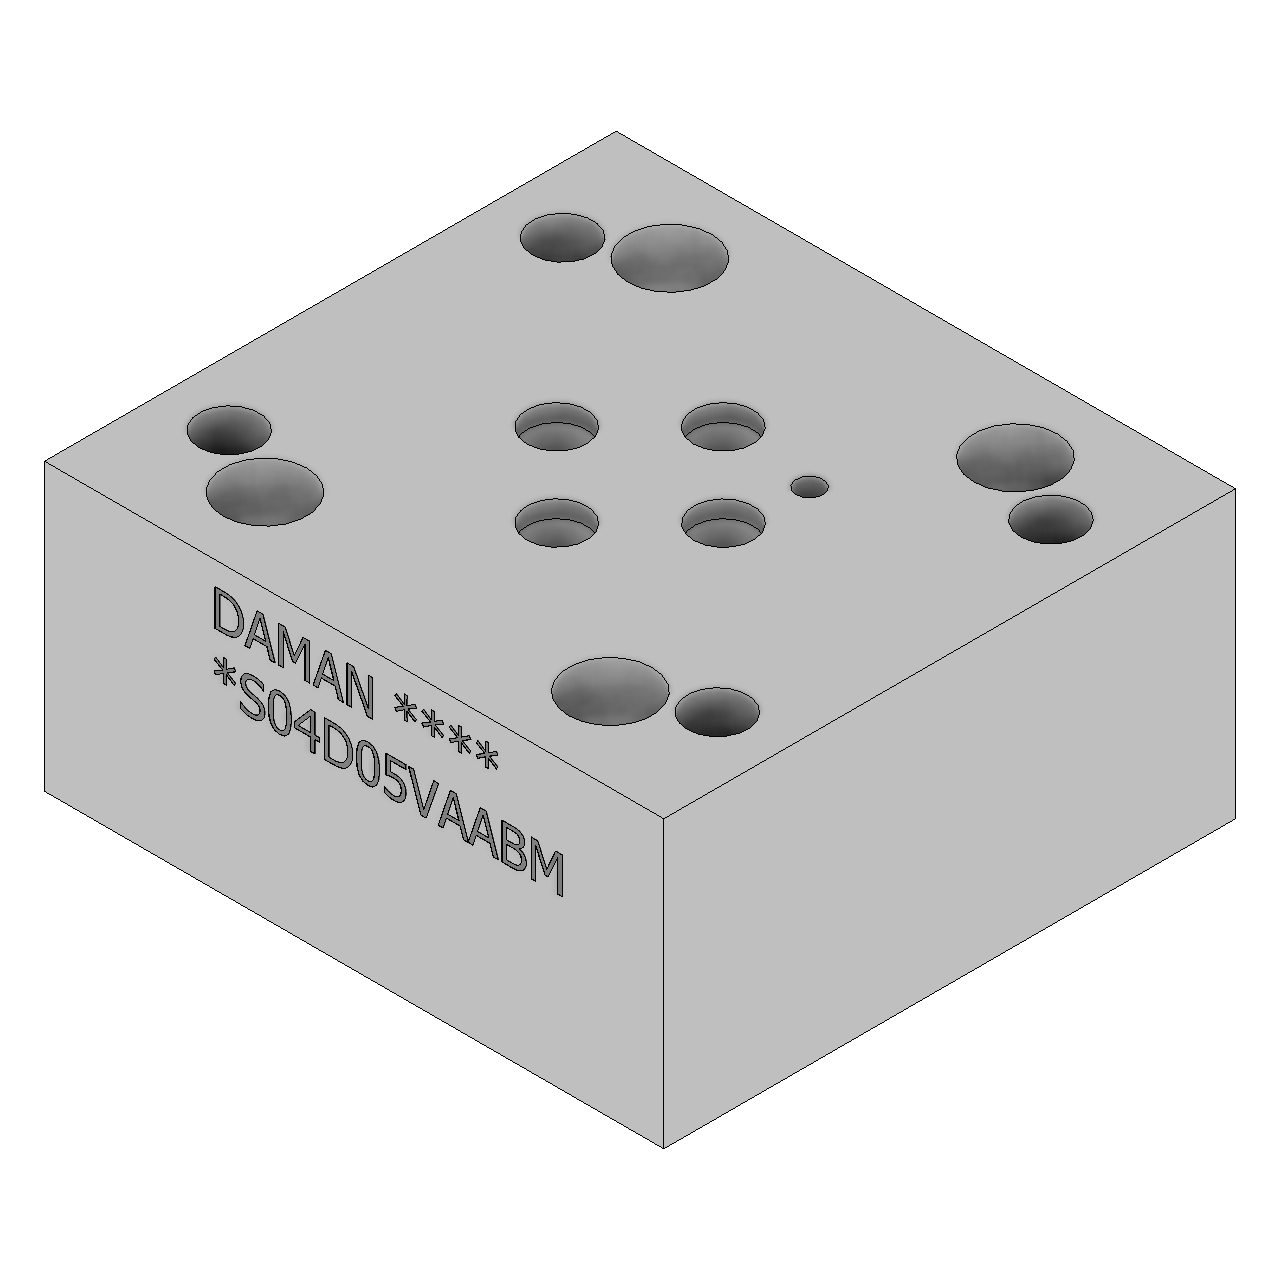 DS04D05VAABM - Valve Adaptors